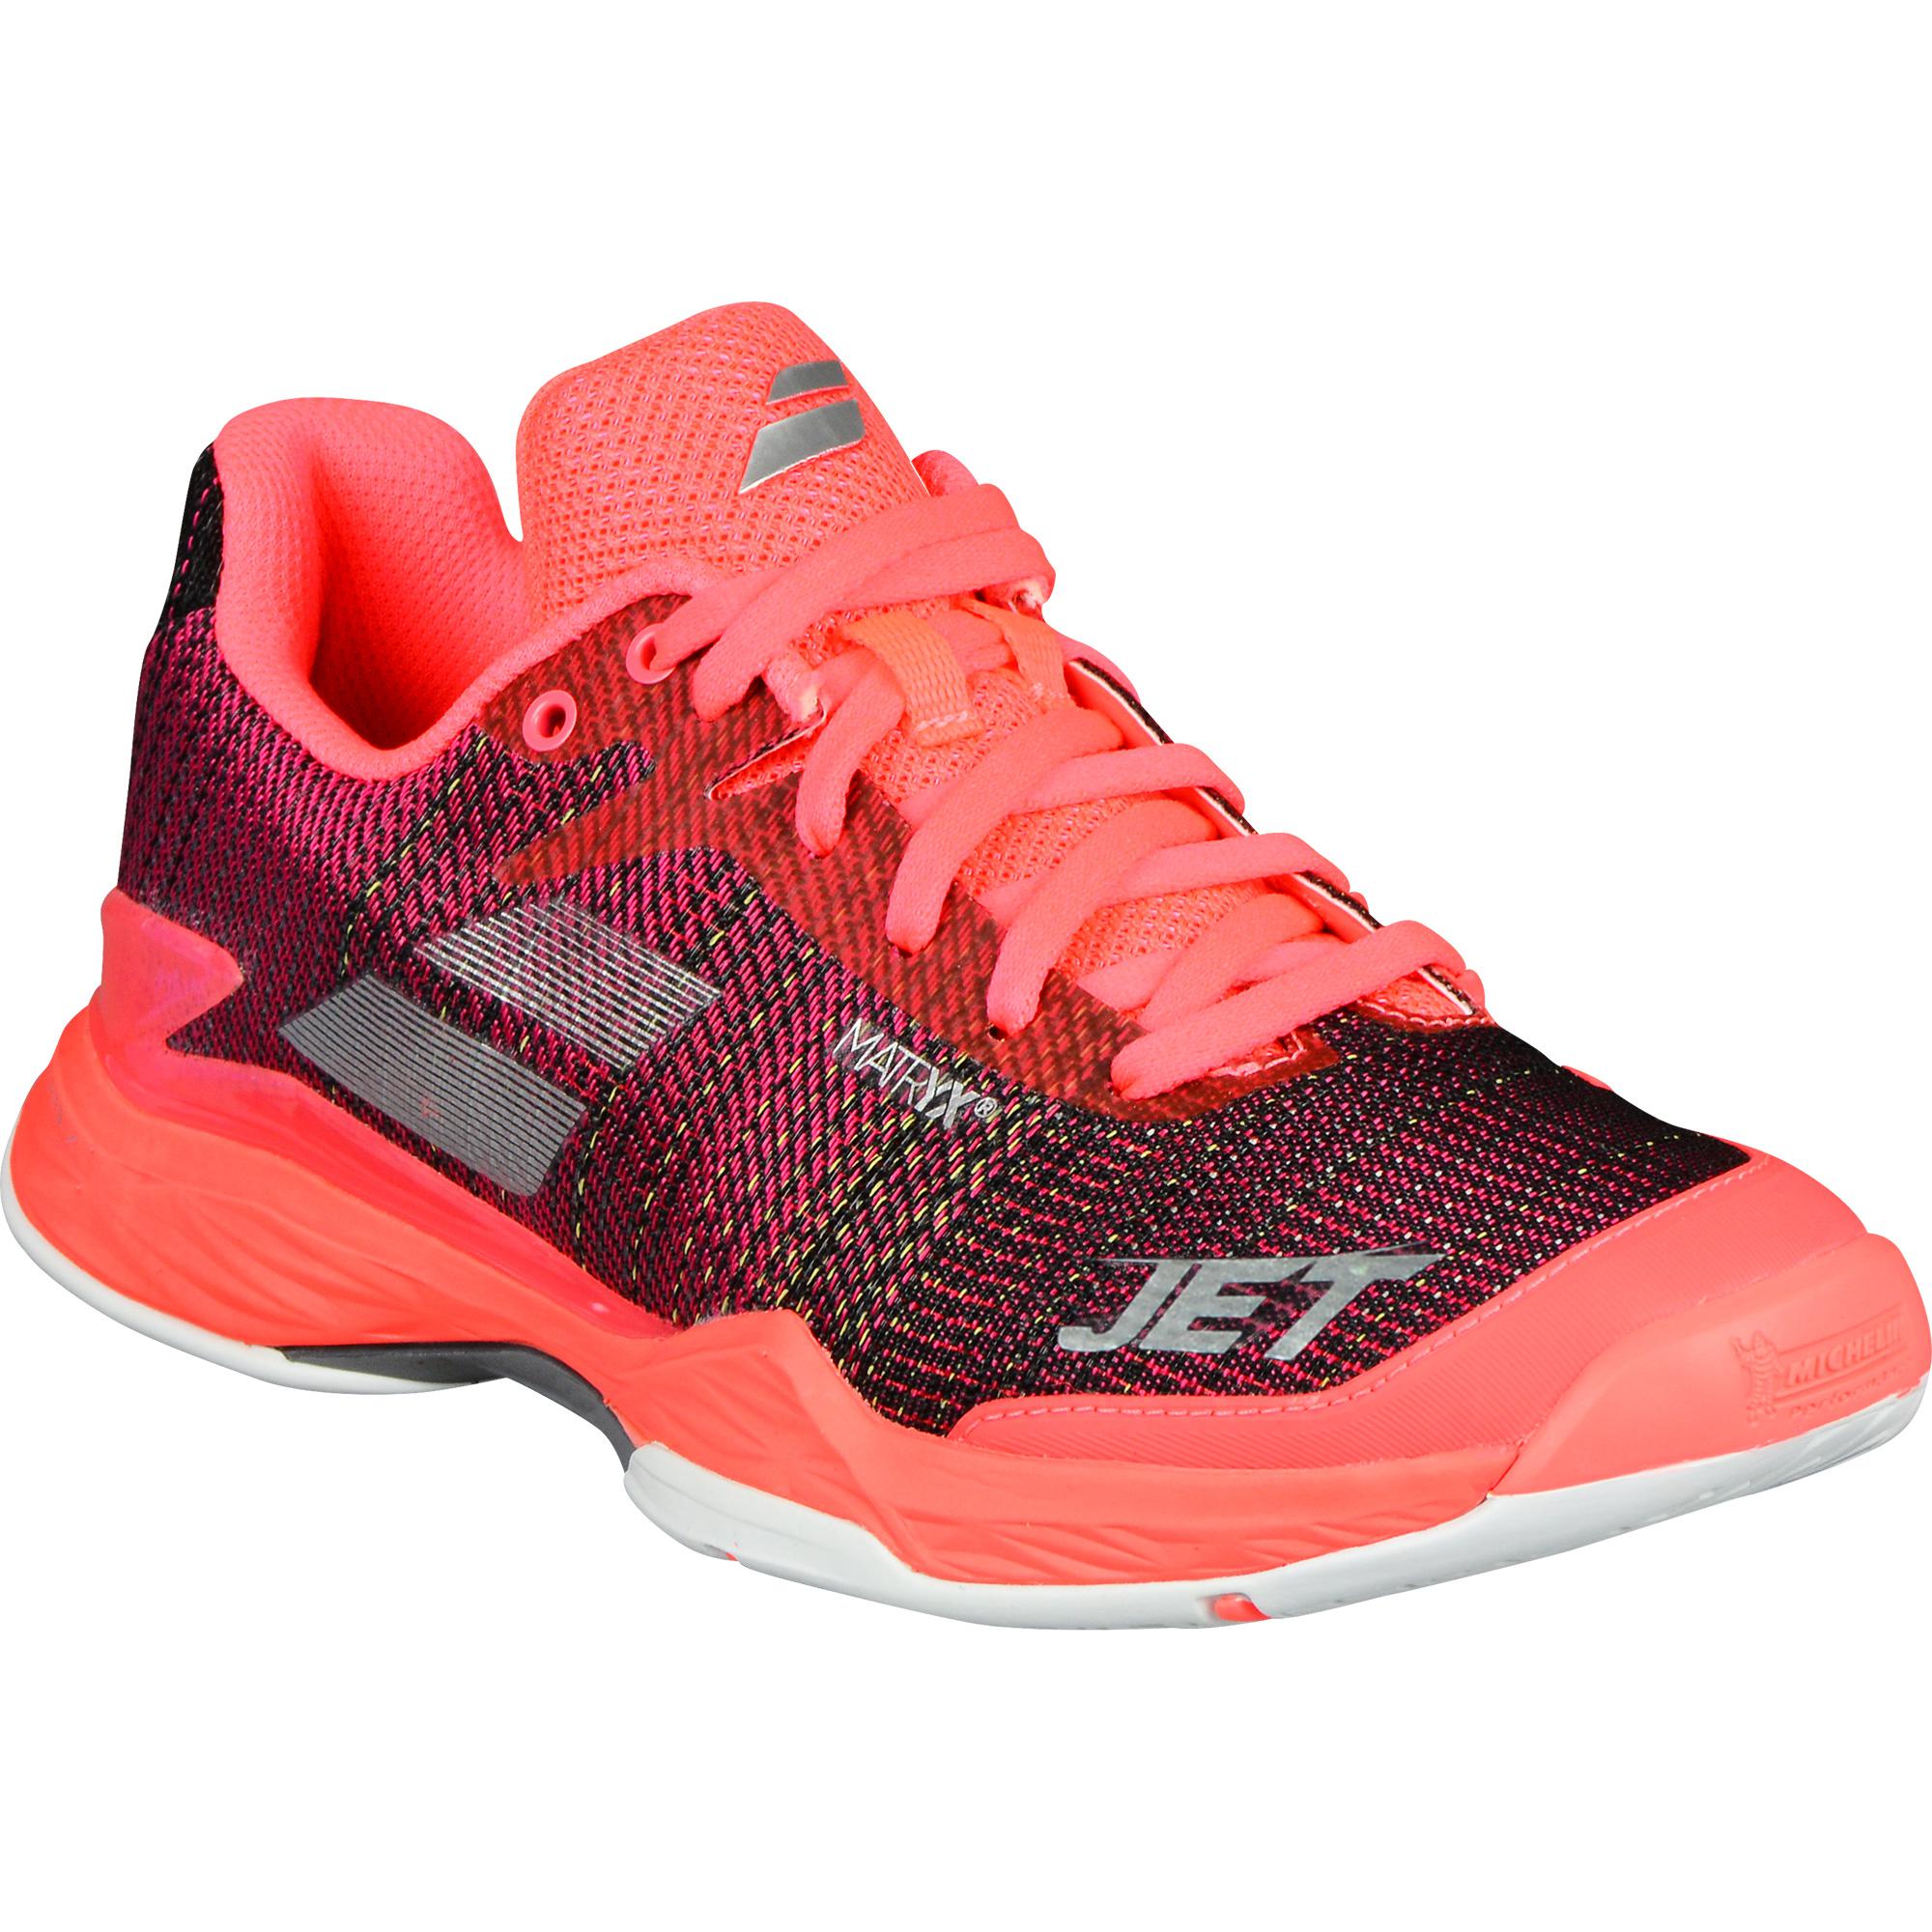 Babolat Jet Mach II All Court Women's Tennis Shoes Fluo Pink Racquet 31S18630 